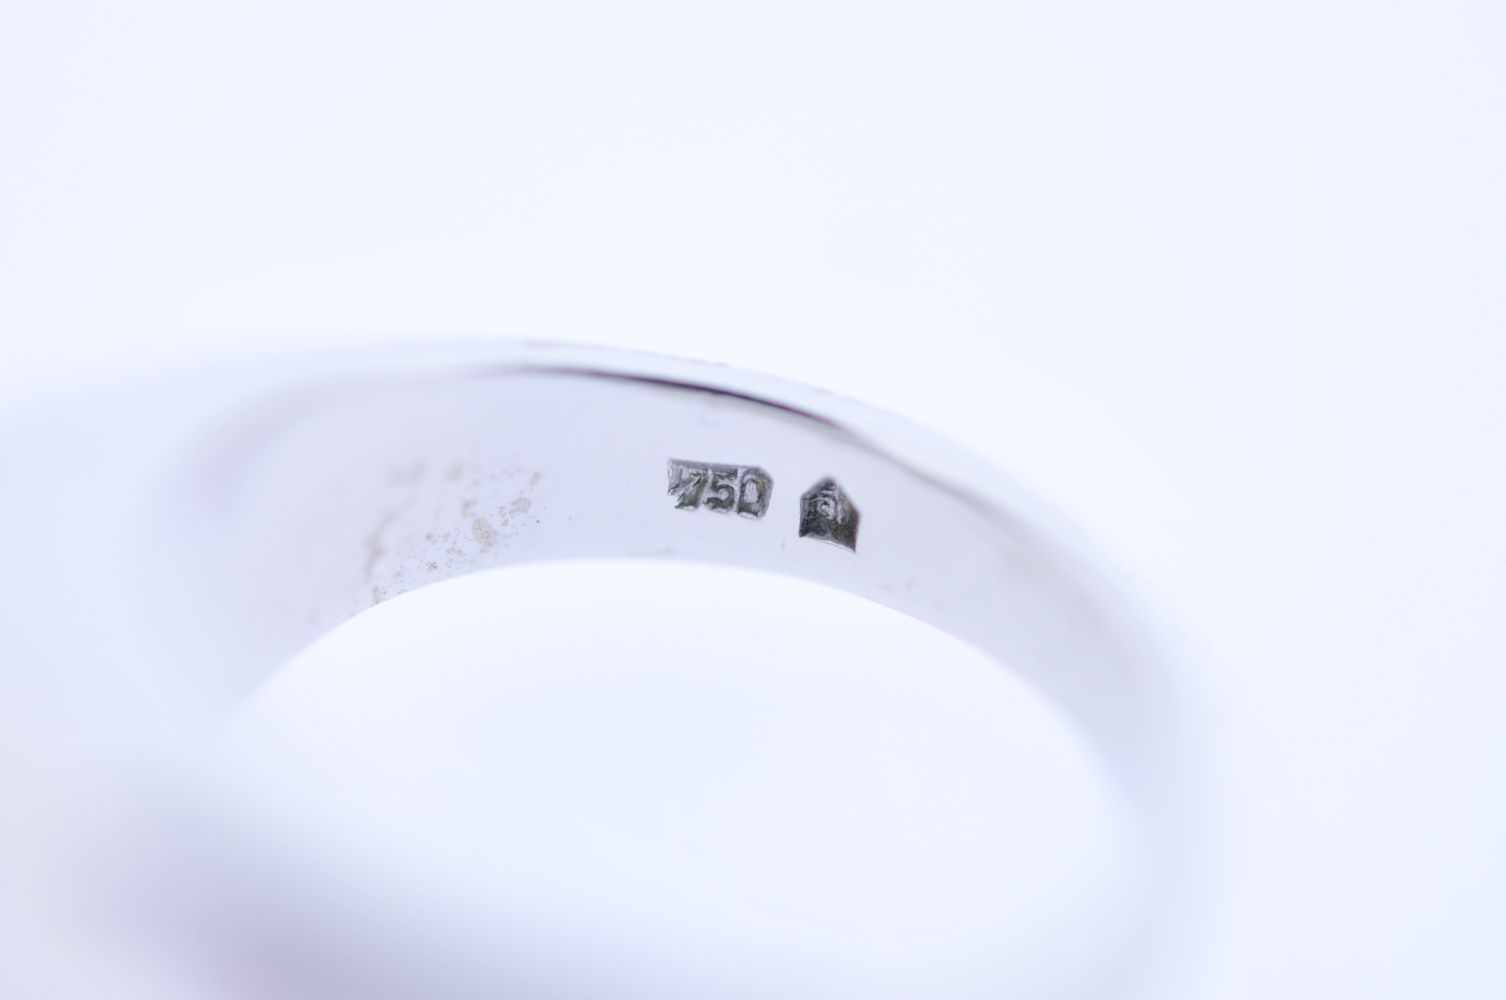 BrillantringWeißgoldener 18 karätiger Ring, mit einem Brillant ca. 1,5 ct, Ringweite 56, 18,7 - Image 3 of 3